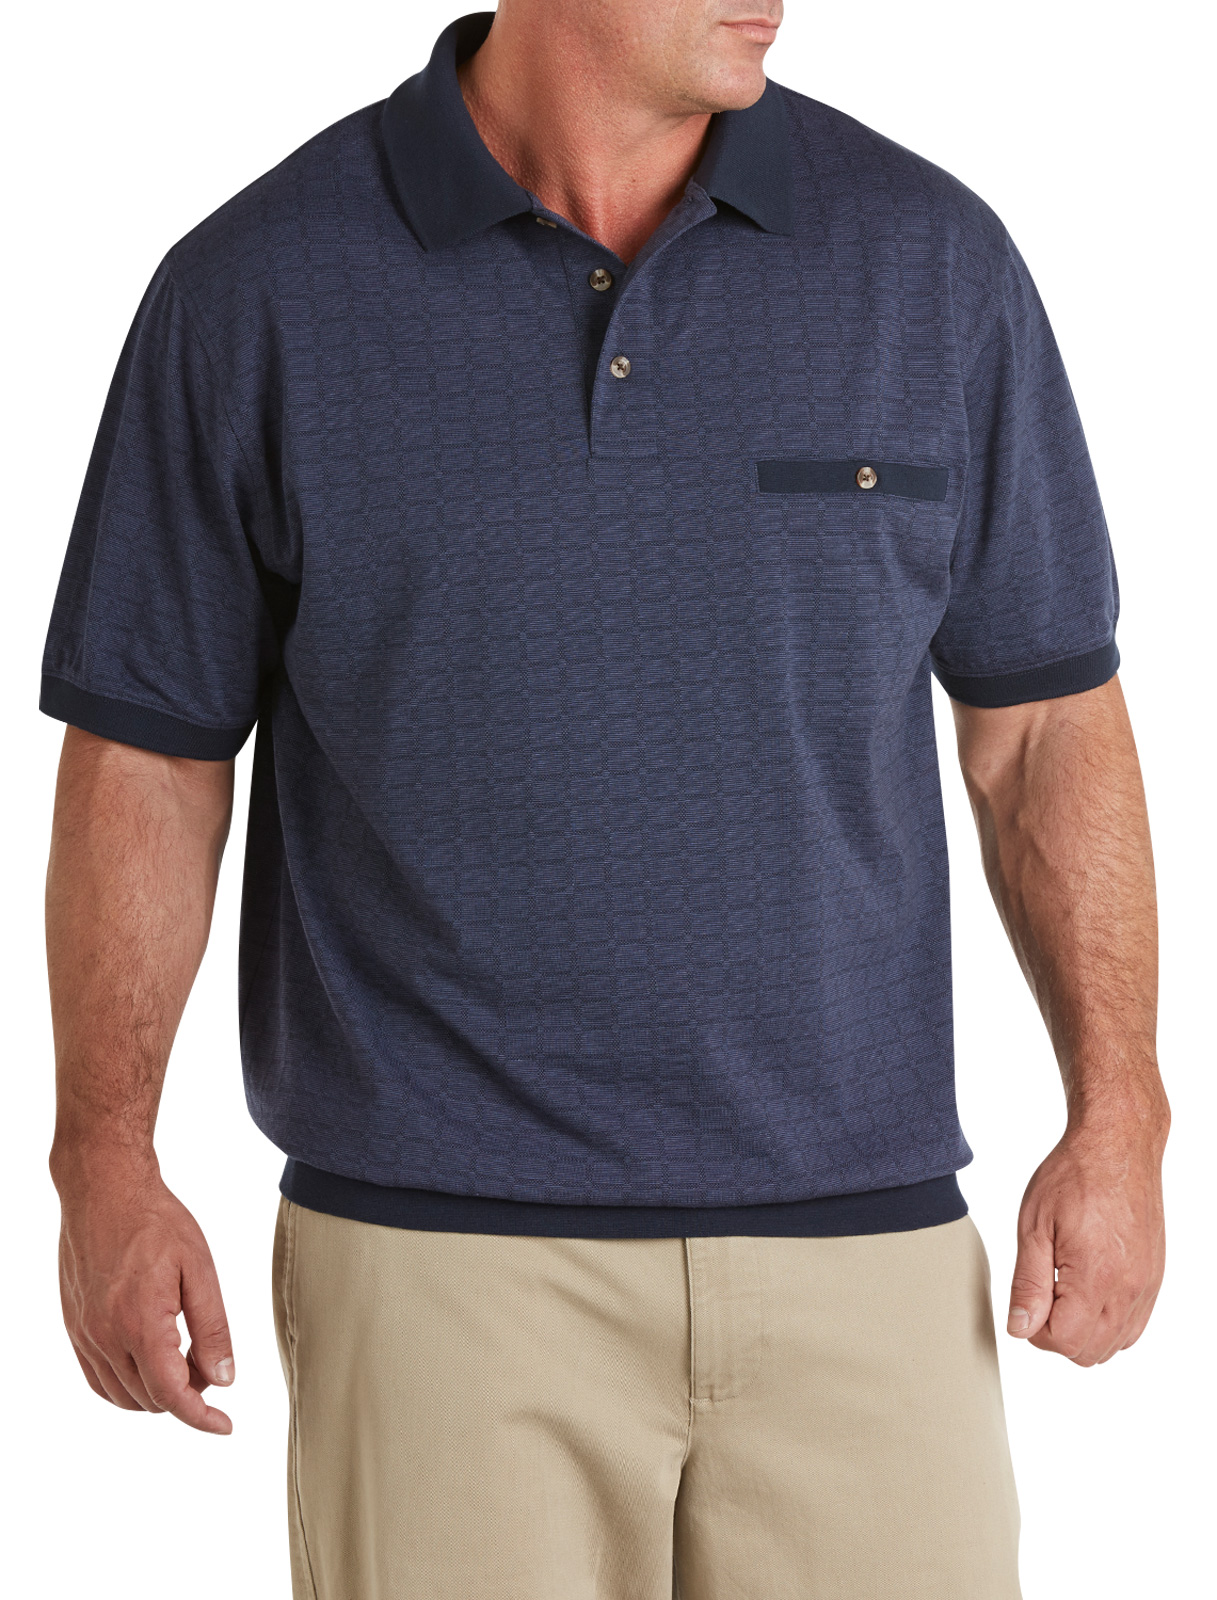 Harbor Bay Men's Big and Tall Tonal Square Banded Bottom Shirt